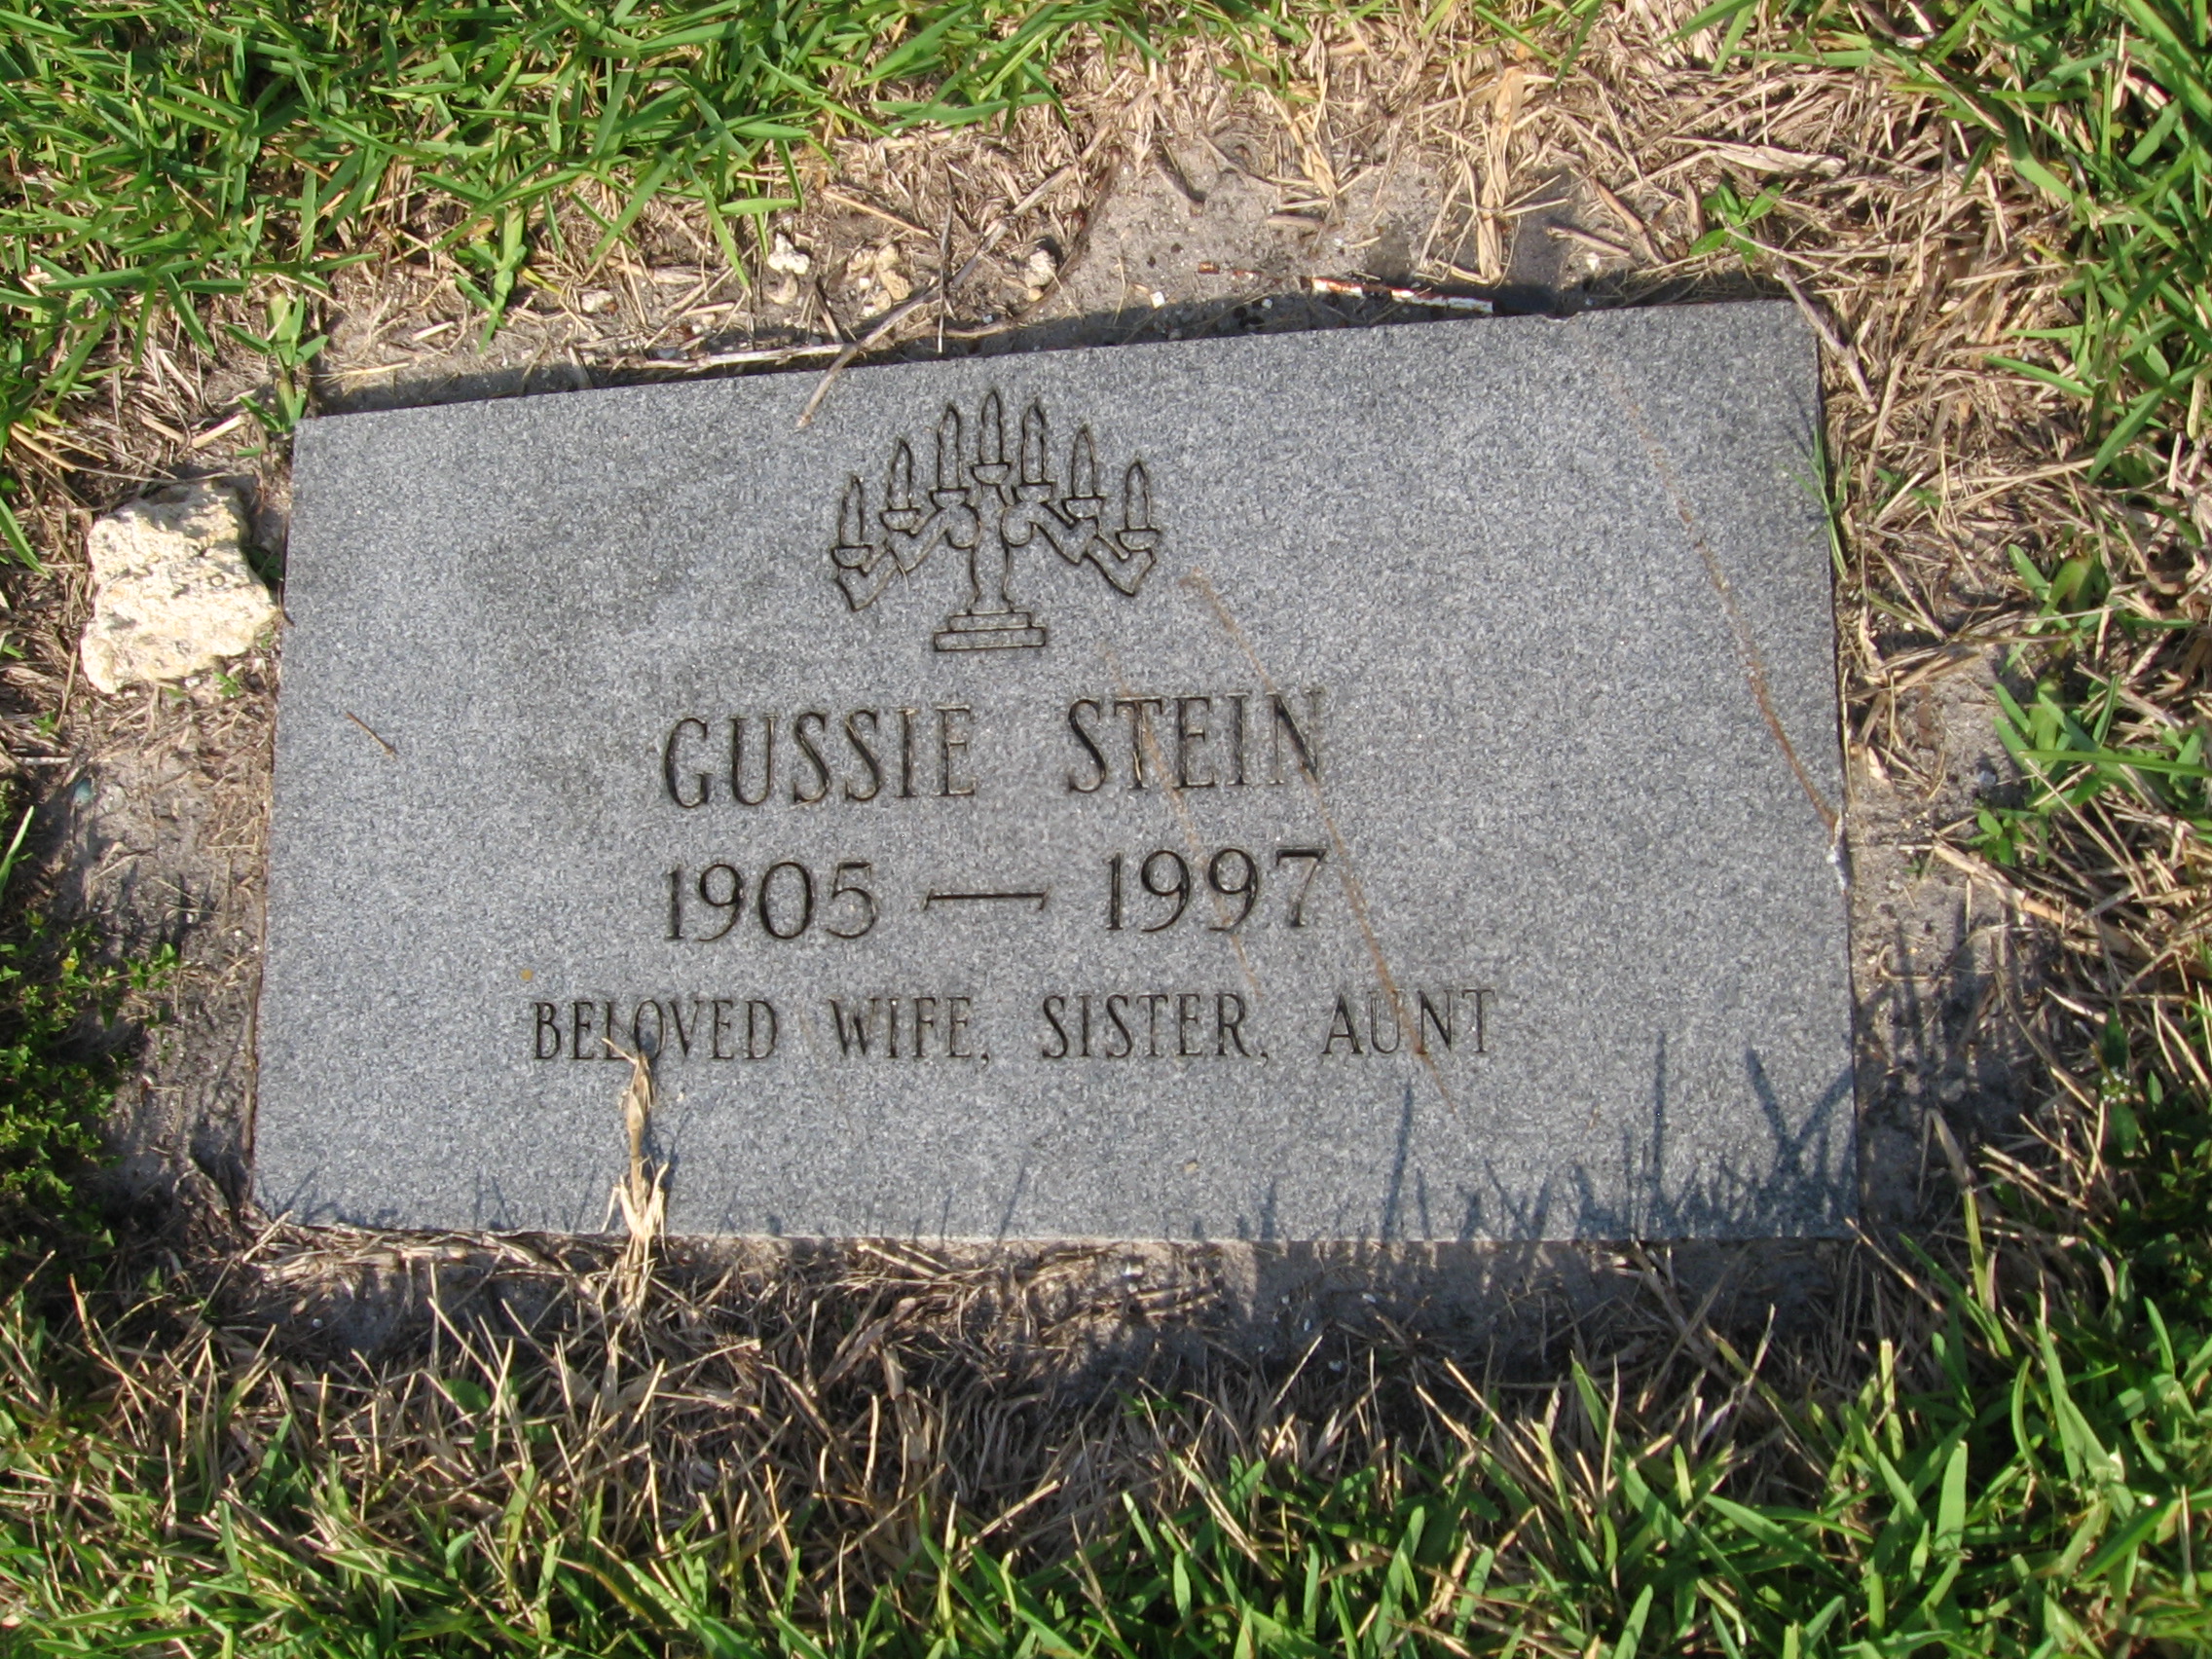 Gussie Stein